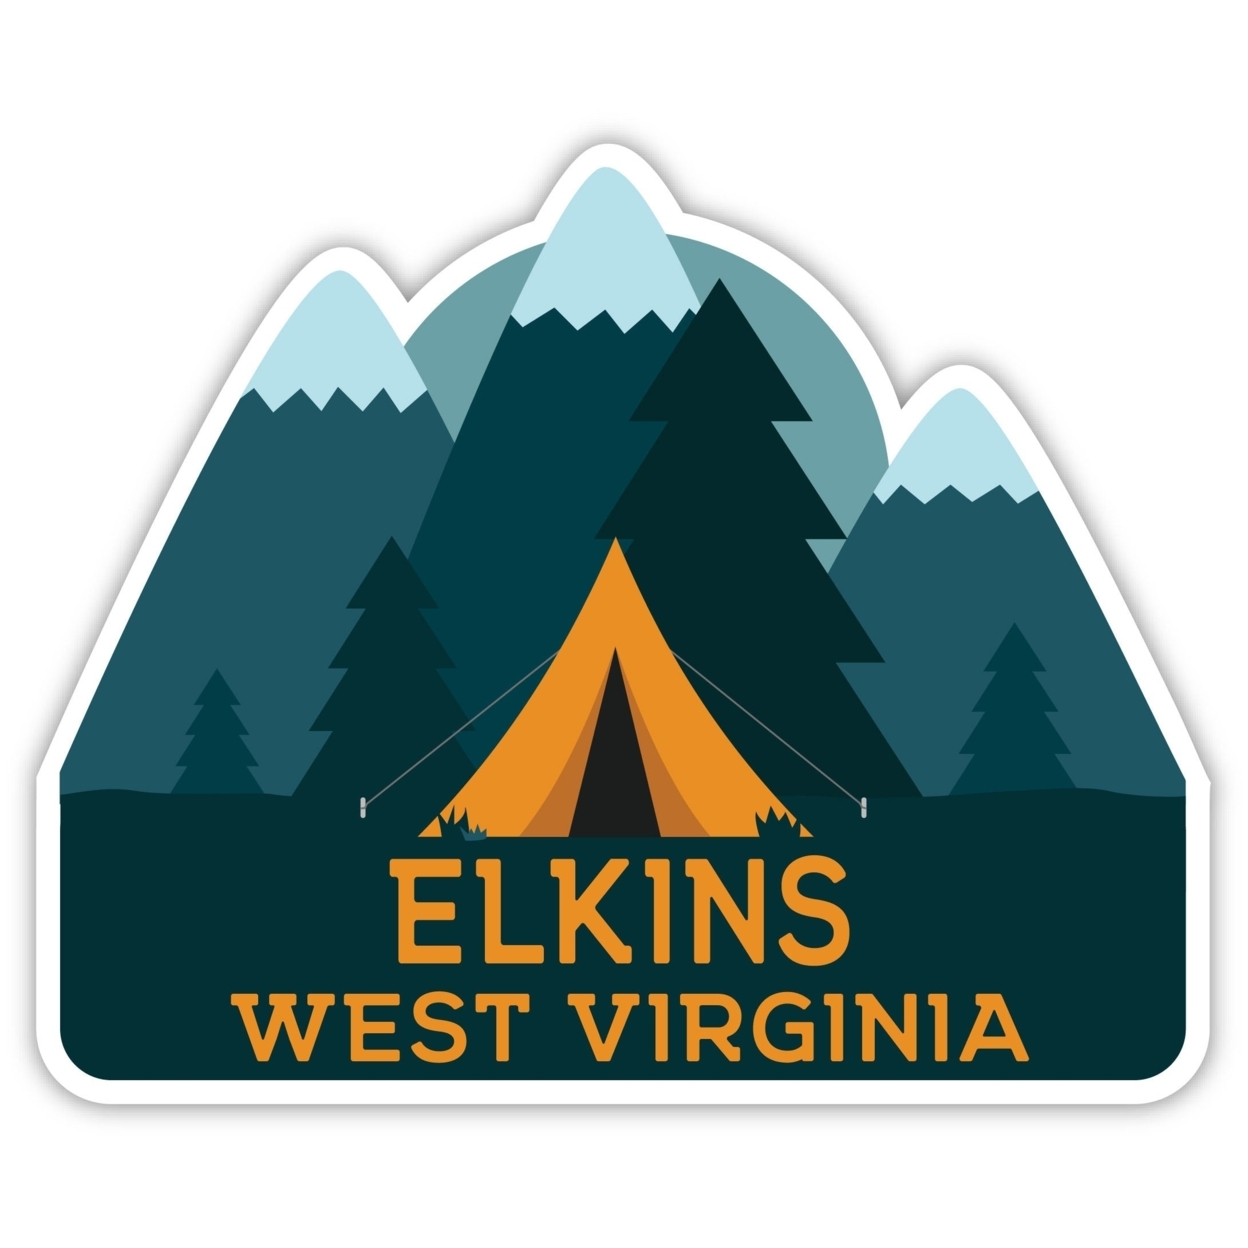 Elkins West Virginia Souvenir Decorative Stickers (Choose Theme And Size) - Single Unit, 12-Inch, Tent